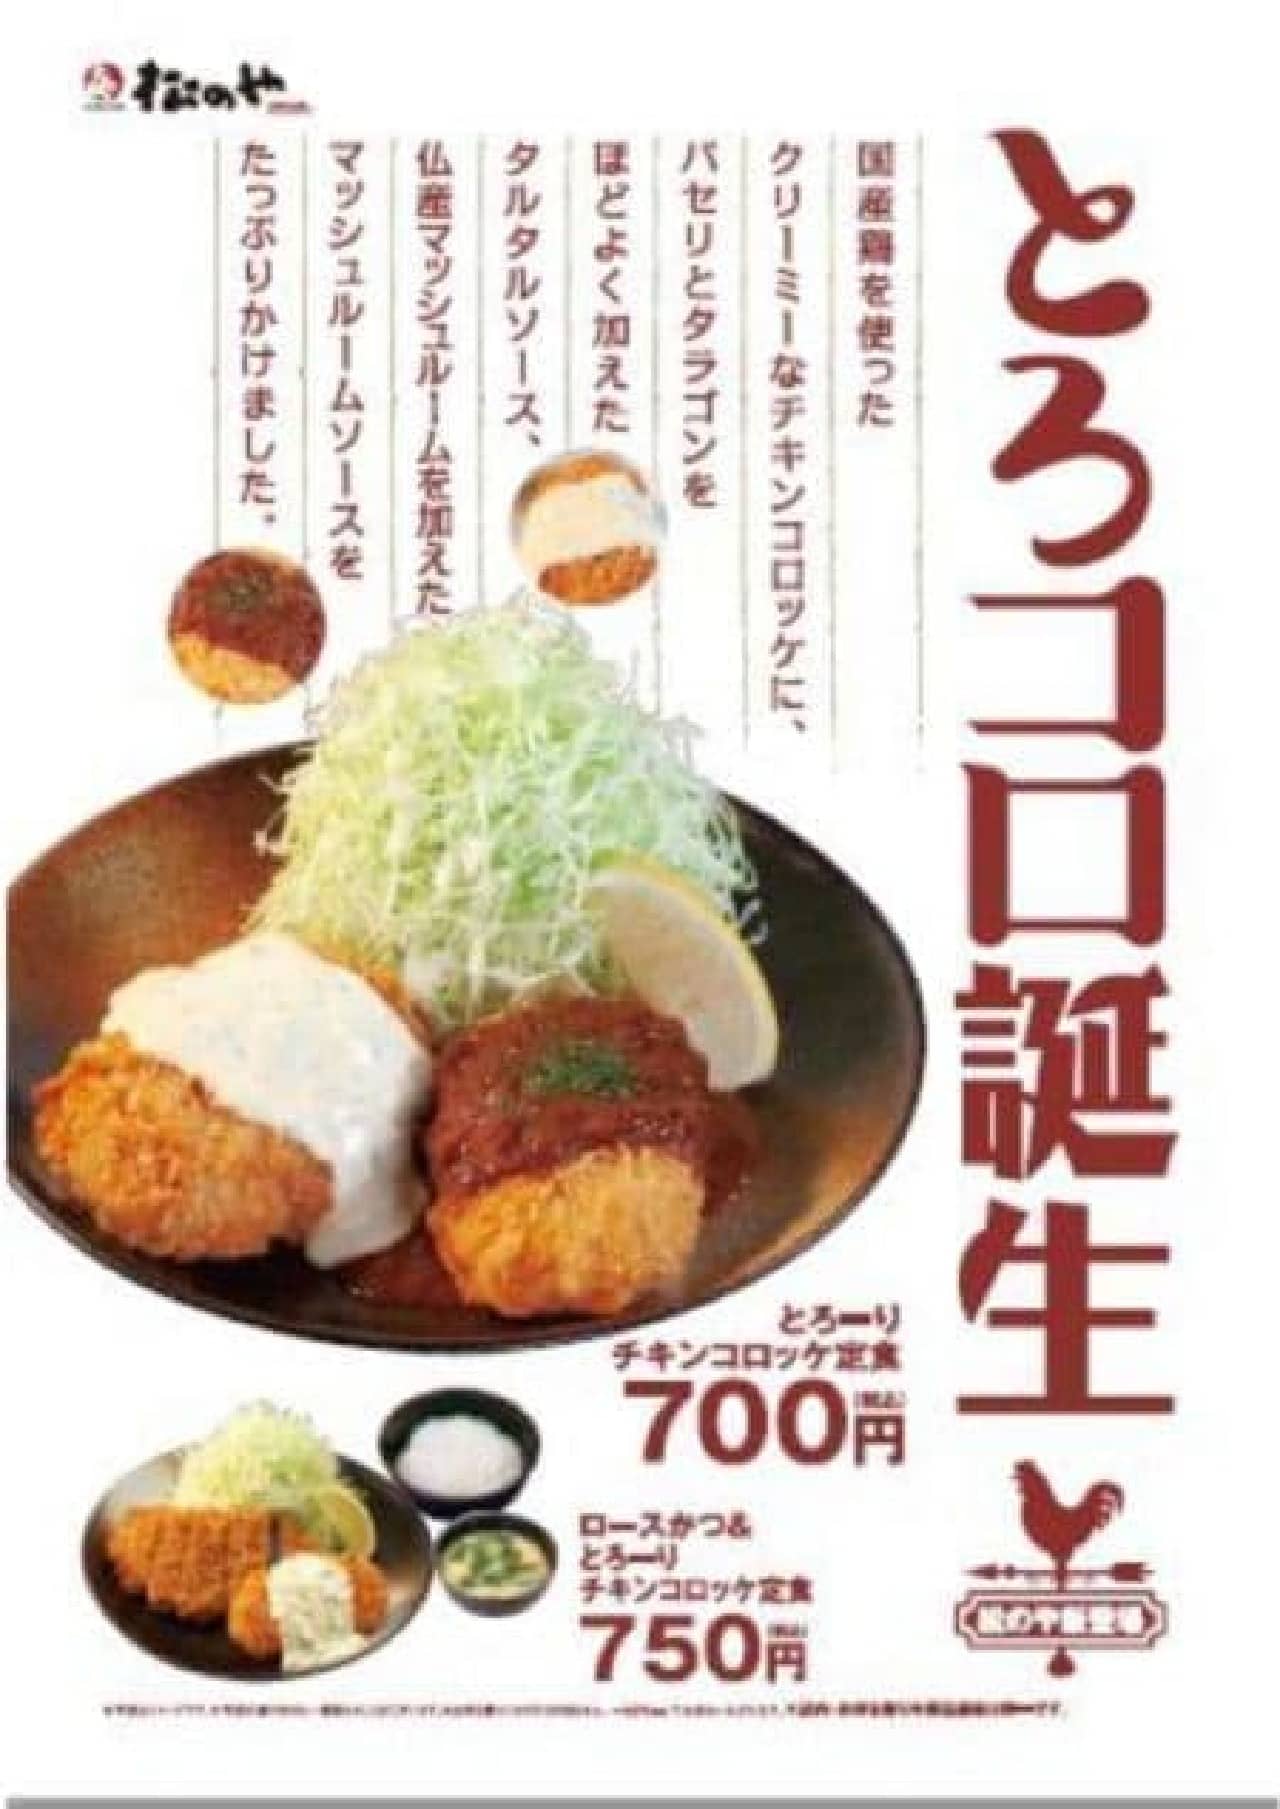 Matsunoya "Torori Chicken Croquette"